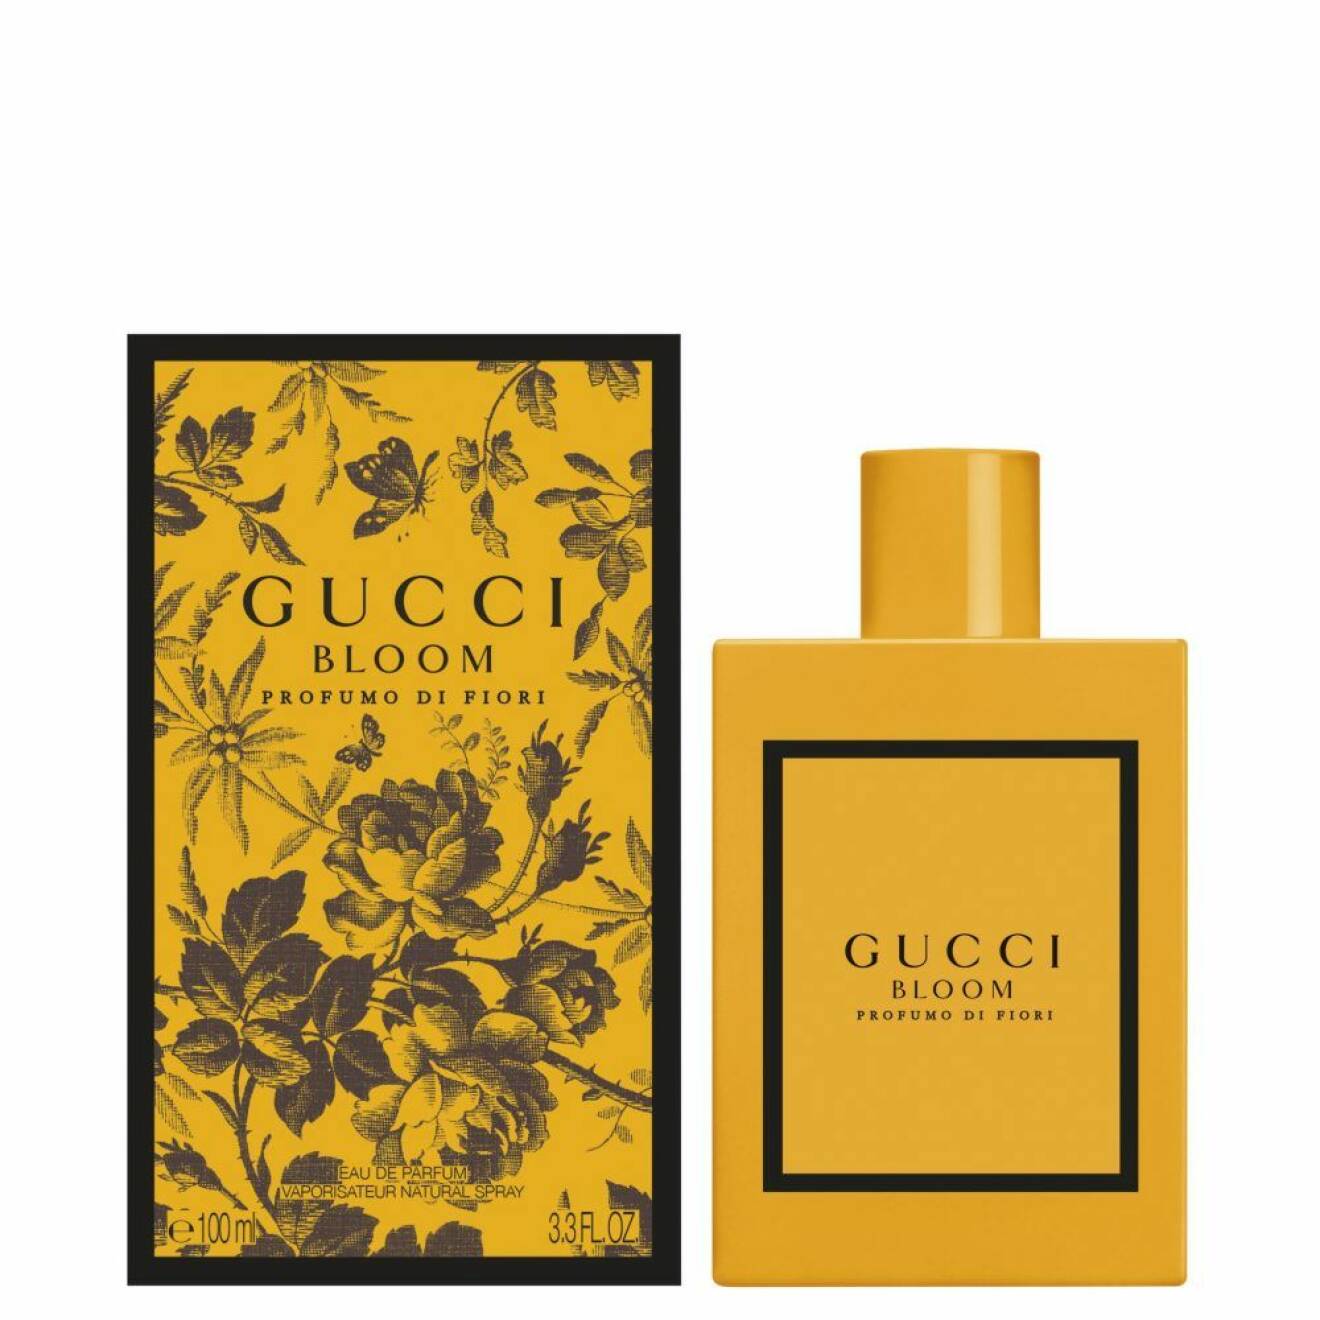 Bloom profumo di Fiori Gucci